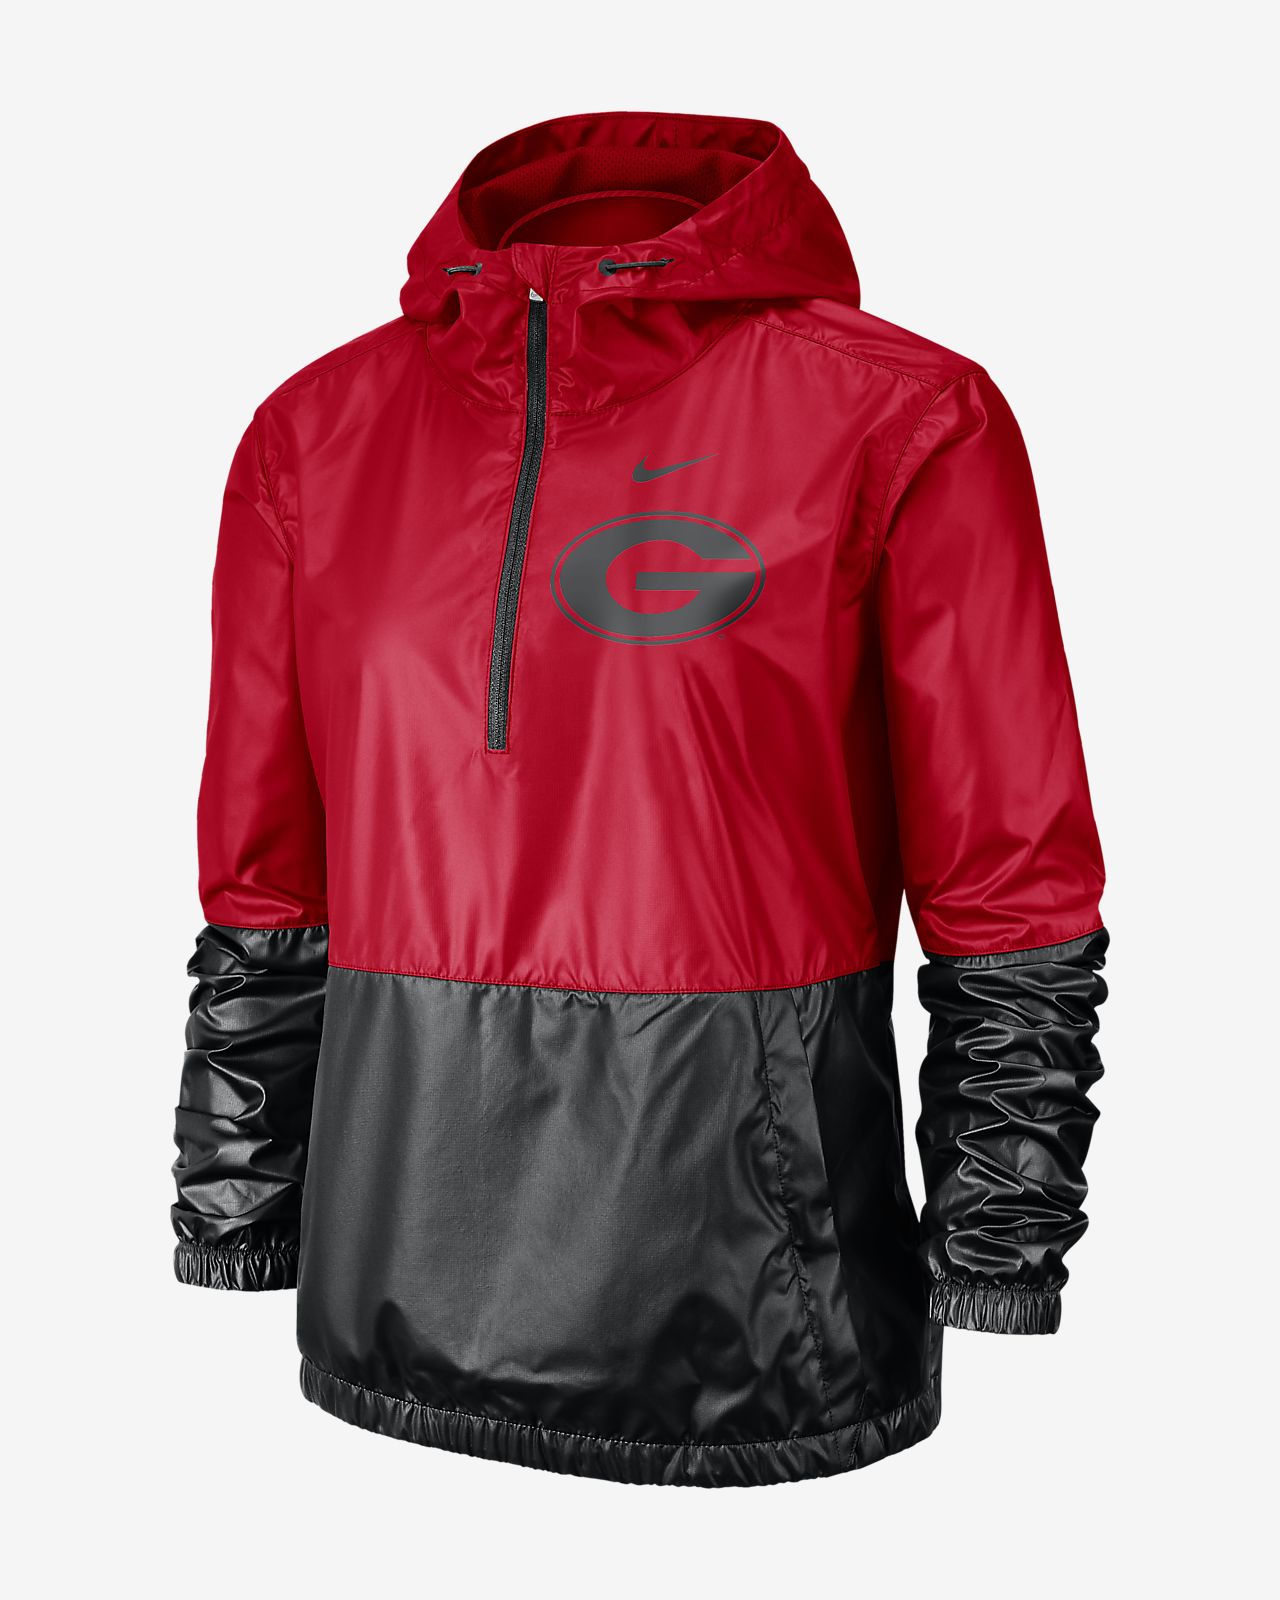 Nike Storm Fit Rain Suit Size Chart